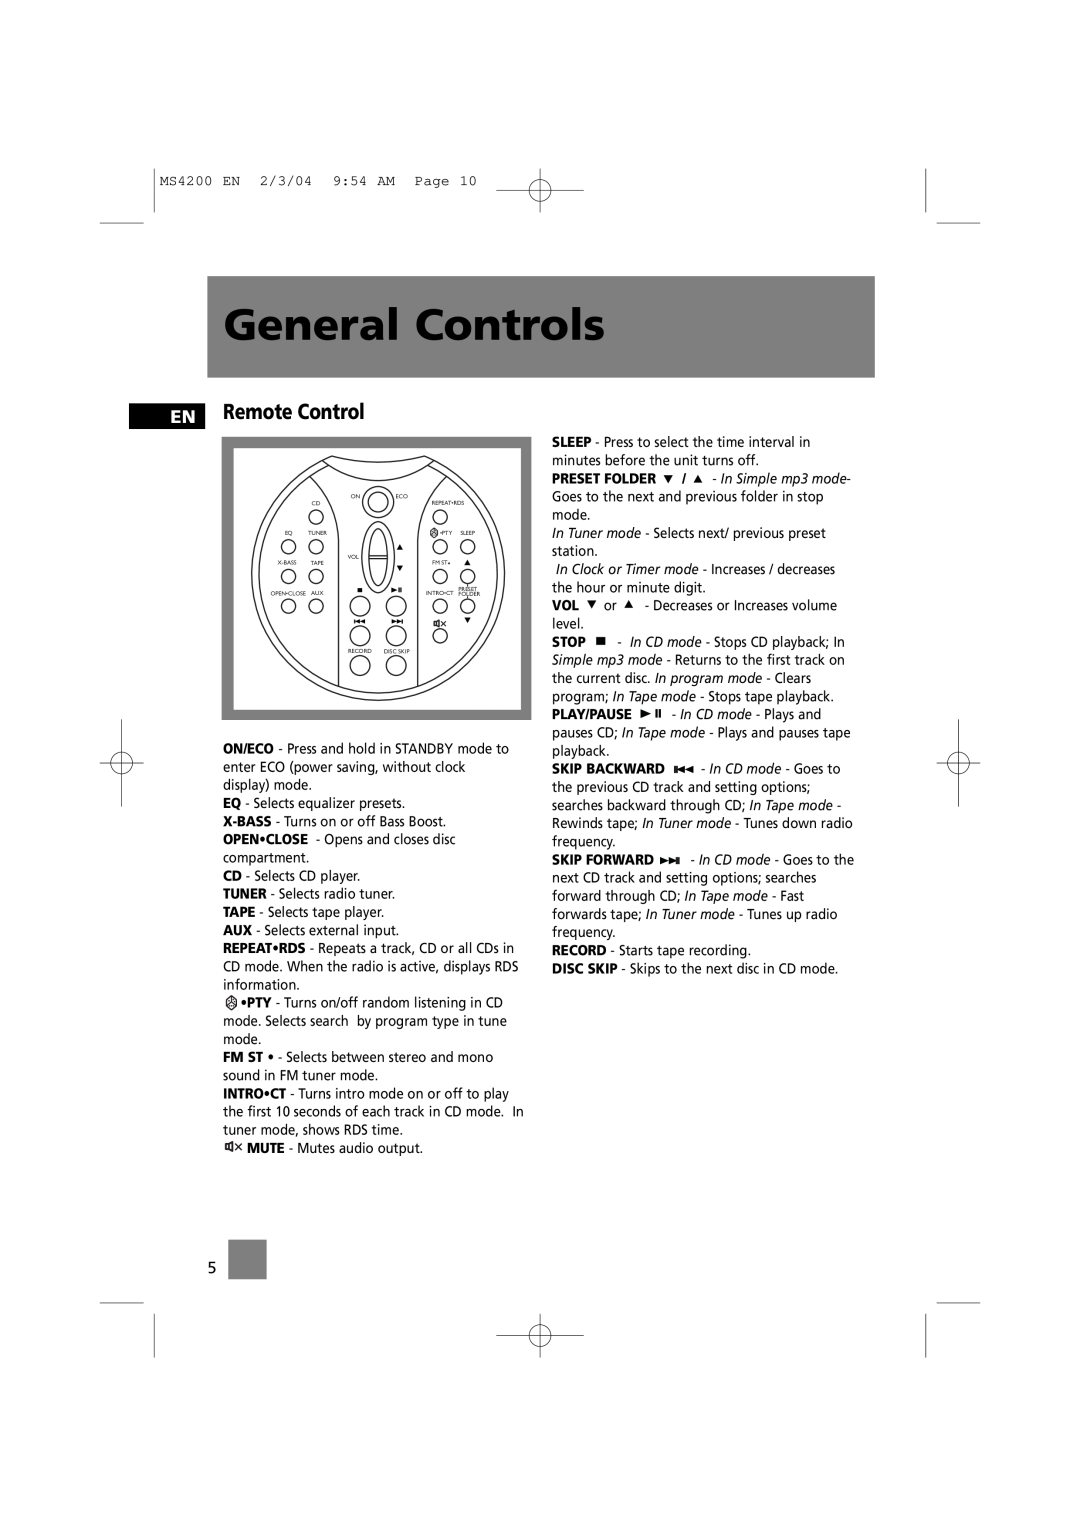 Technicolor - Thomson MS4200 manual EN Remote Control, General Controls 